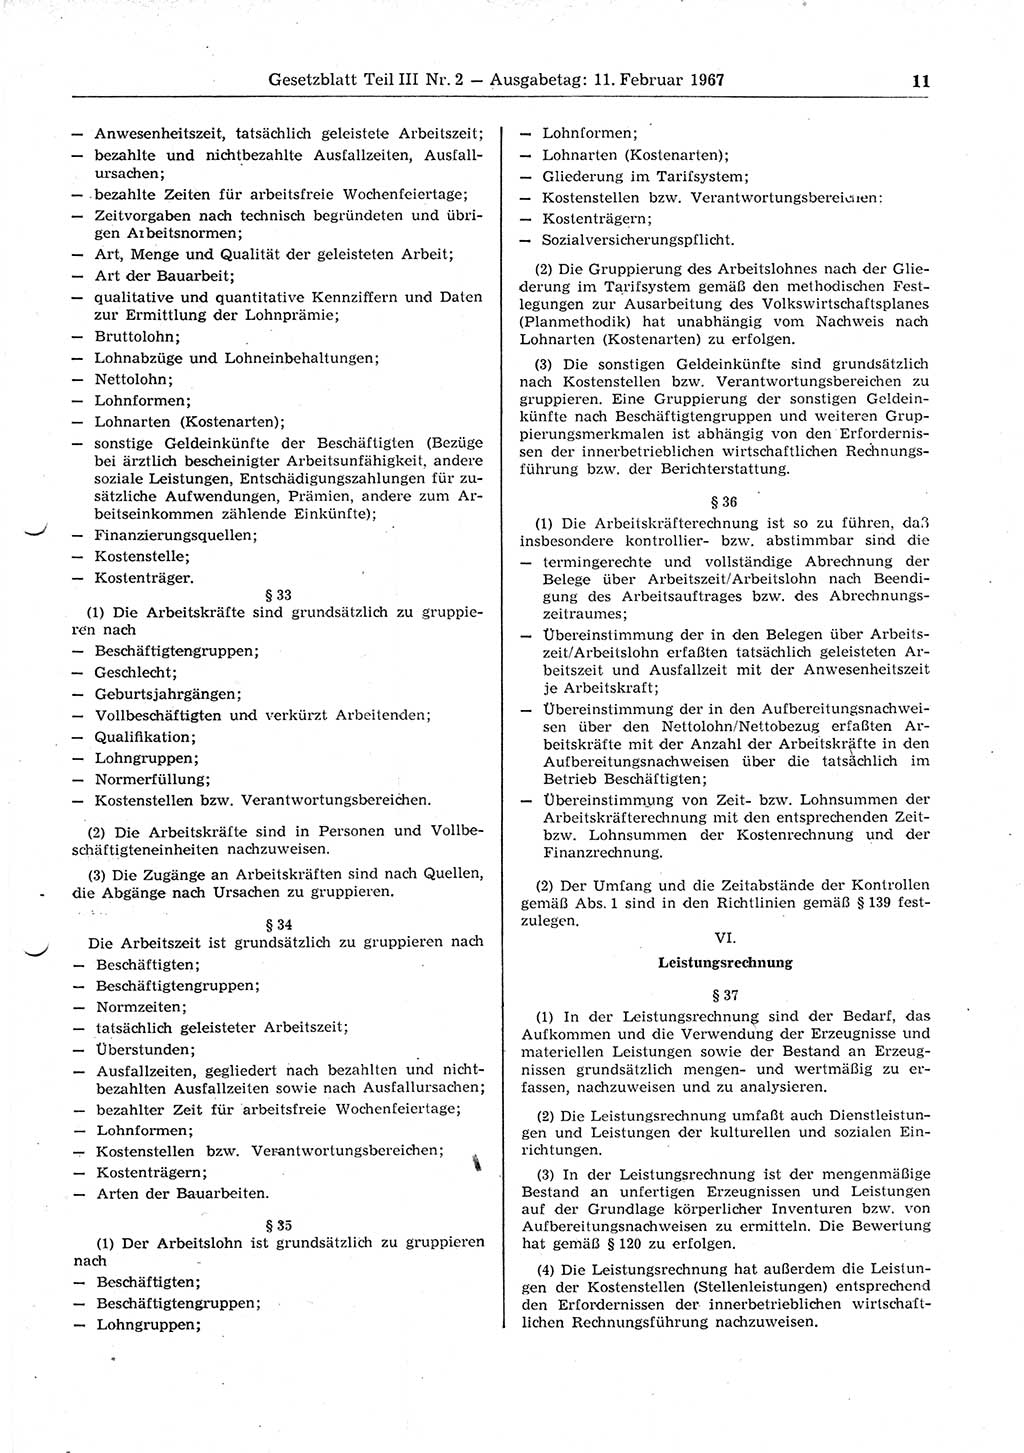 Gesetzblatt (GBl.) der Deutschen Demokratischen Republik (DDR) Teil ⅠⅠⅠ 1967, Seite 11 (GBl. DDR ⅠⅠⅠ 1967, S. 11)